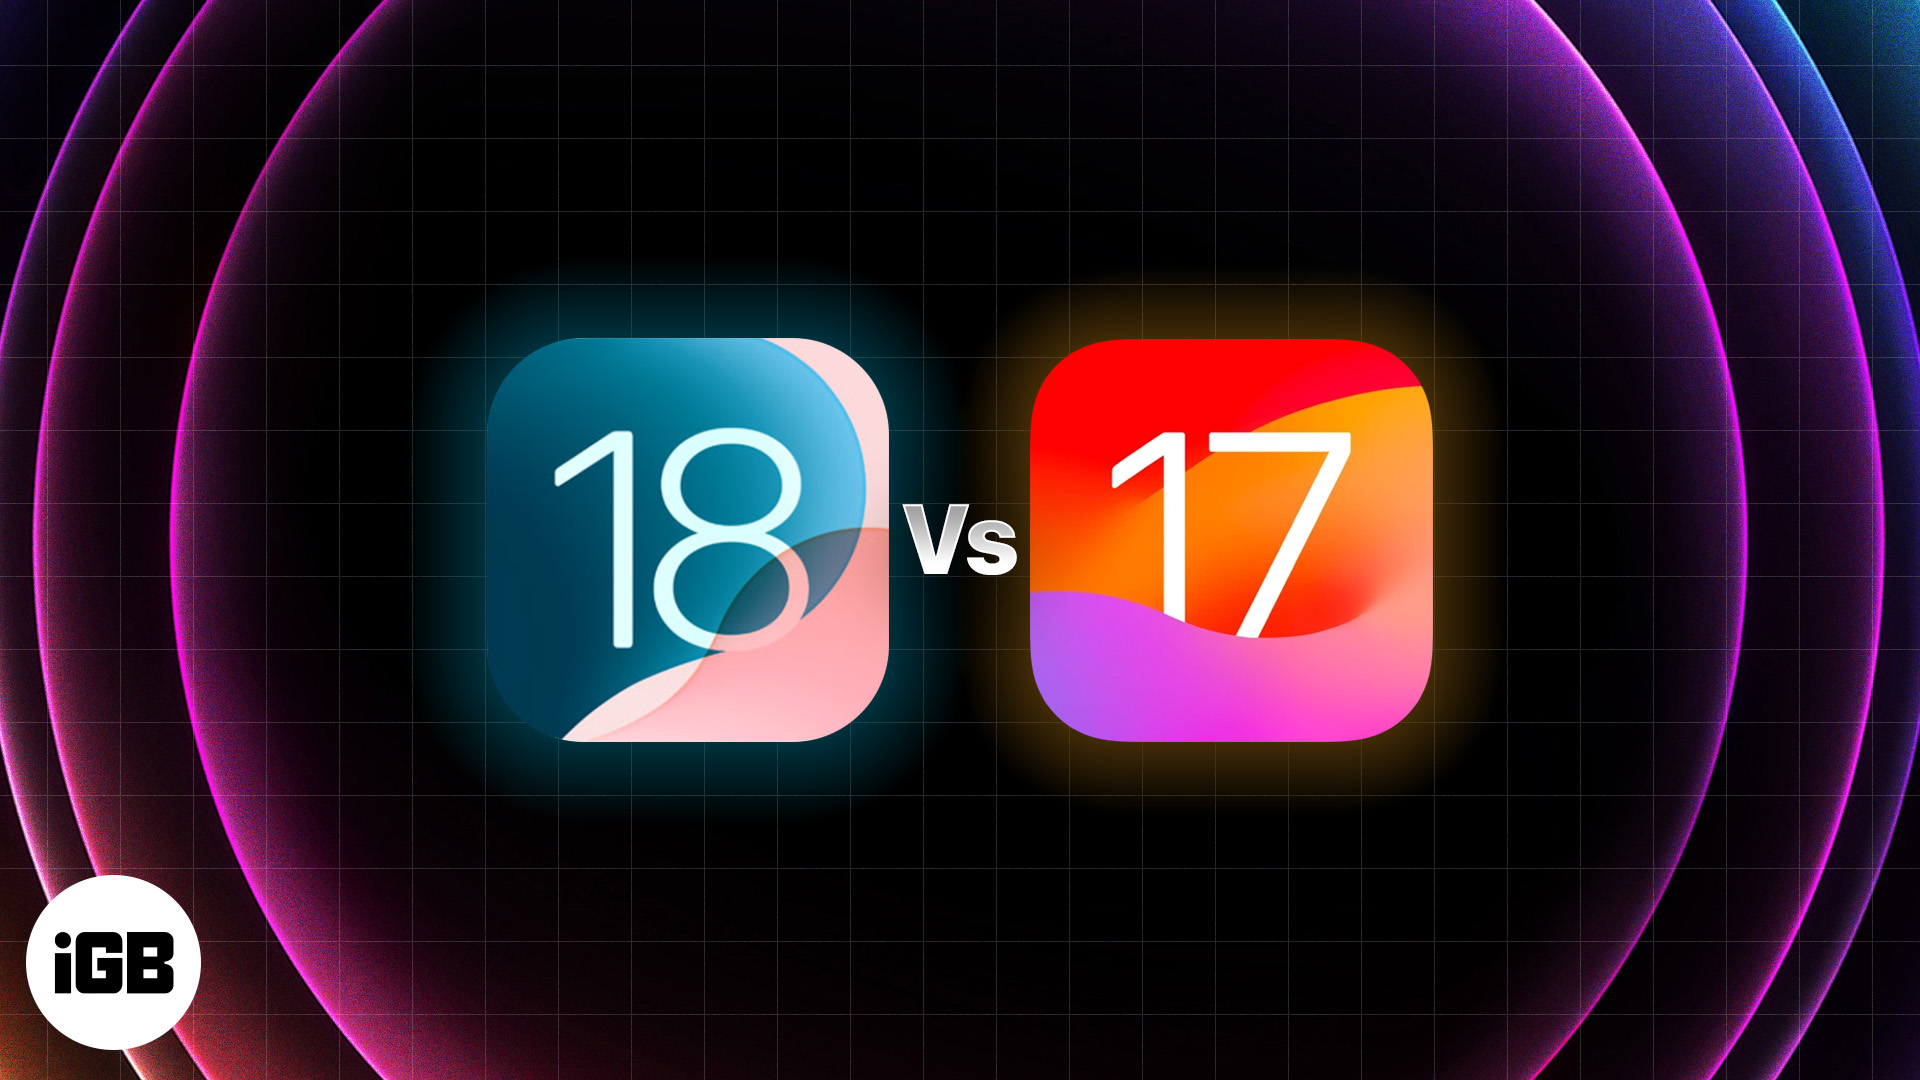 iOS 18 vs iOS 17: Should I upgrade?